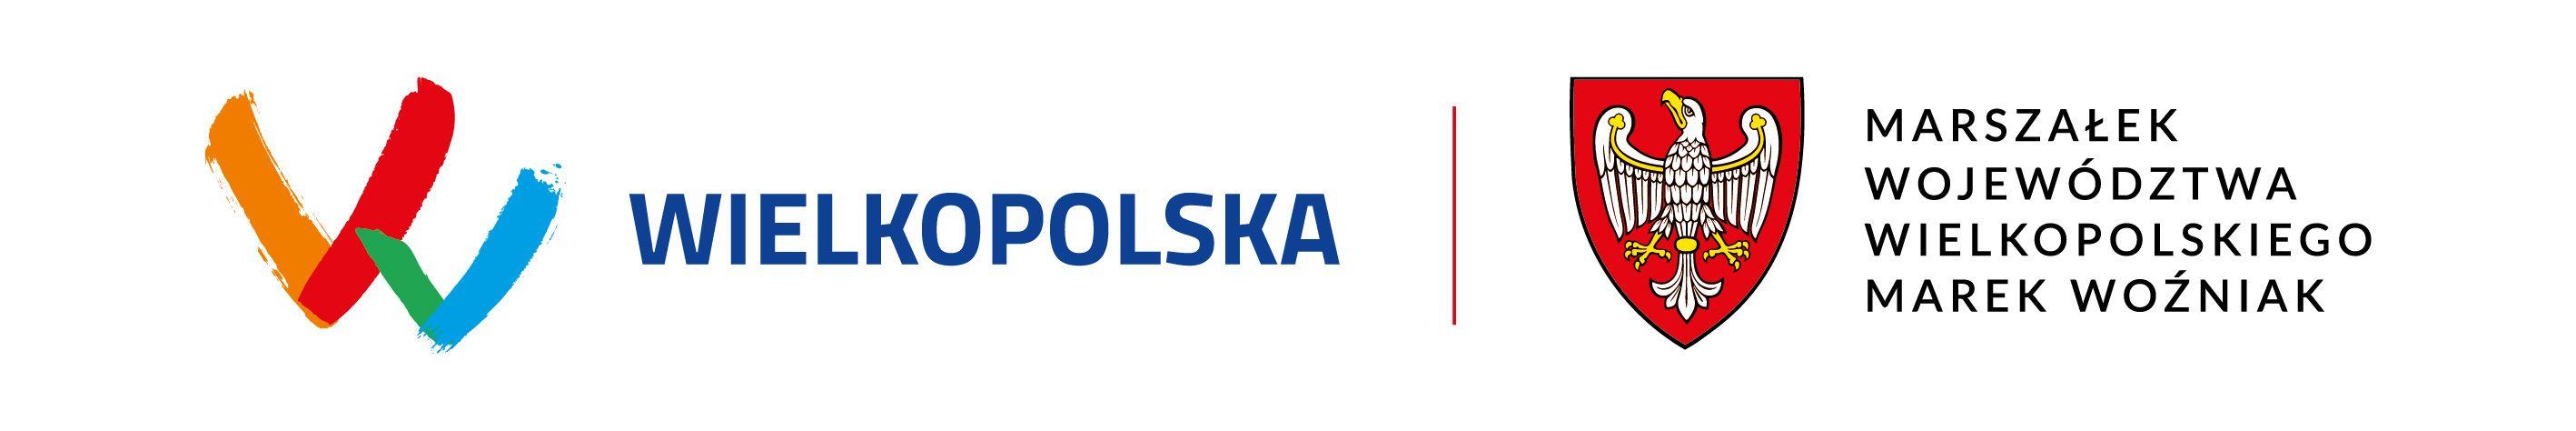 Logotyp Wielkopolska, Marszałek Województwa Wielkopolskiego Marek Woźniak